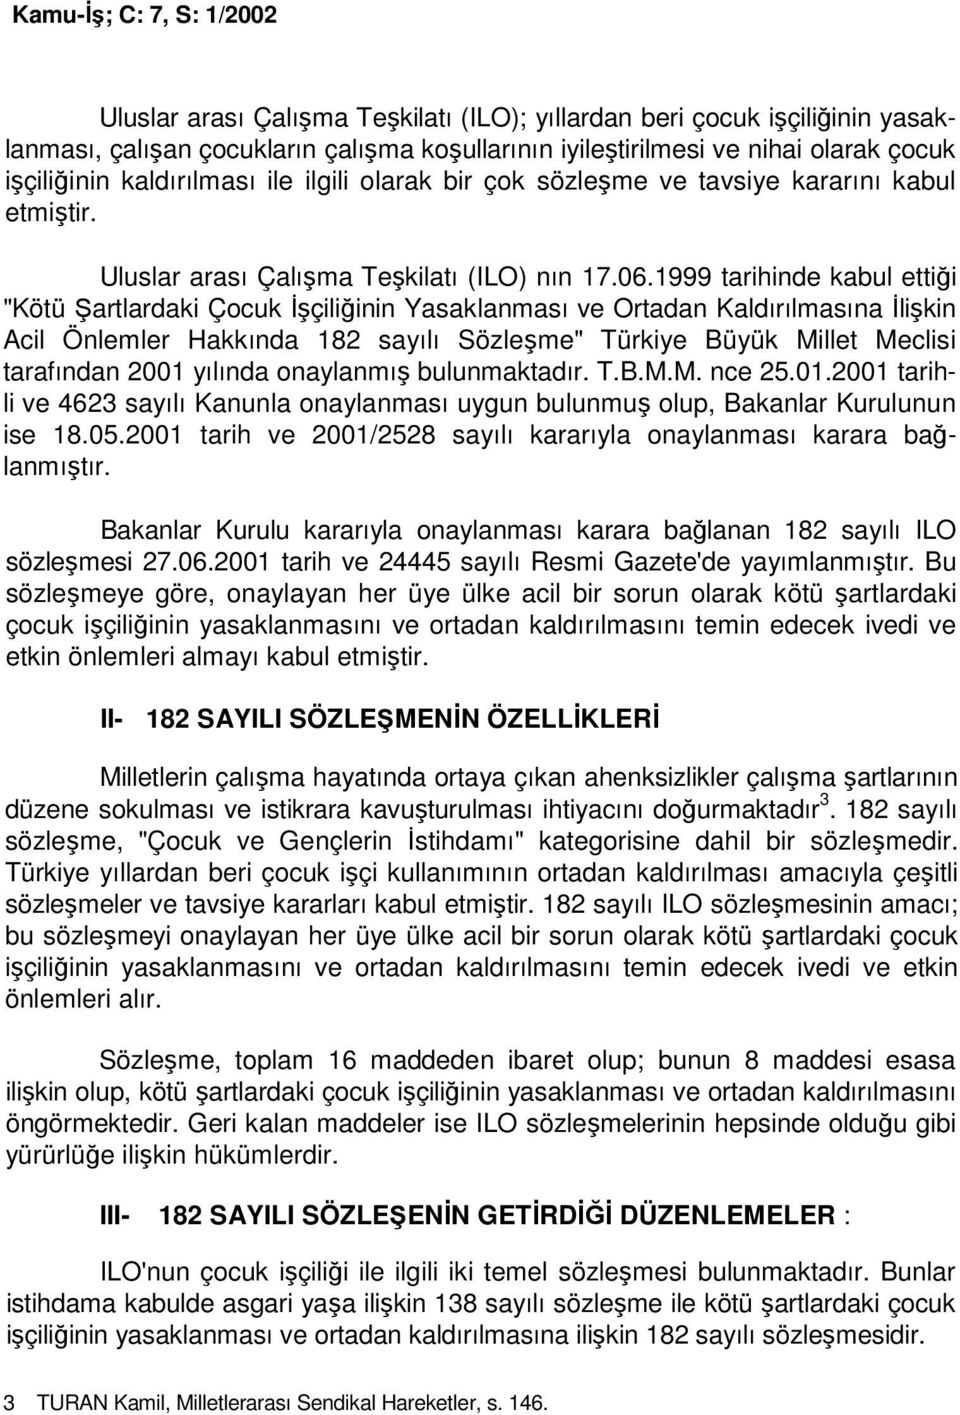 1999 tarihinde kabul ettiği "Kötü Şartlardaki Çocuk Đşçiliğinin Yasaklanması ve Ortadan Kaldırılmasına Đlişkin Acil Önlemler Hakkında 182 sayılı Sözleşme" Türkiye Büyük Millet Meclisi tarafından 2001